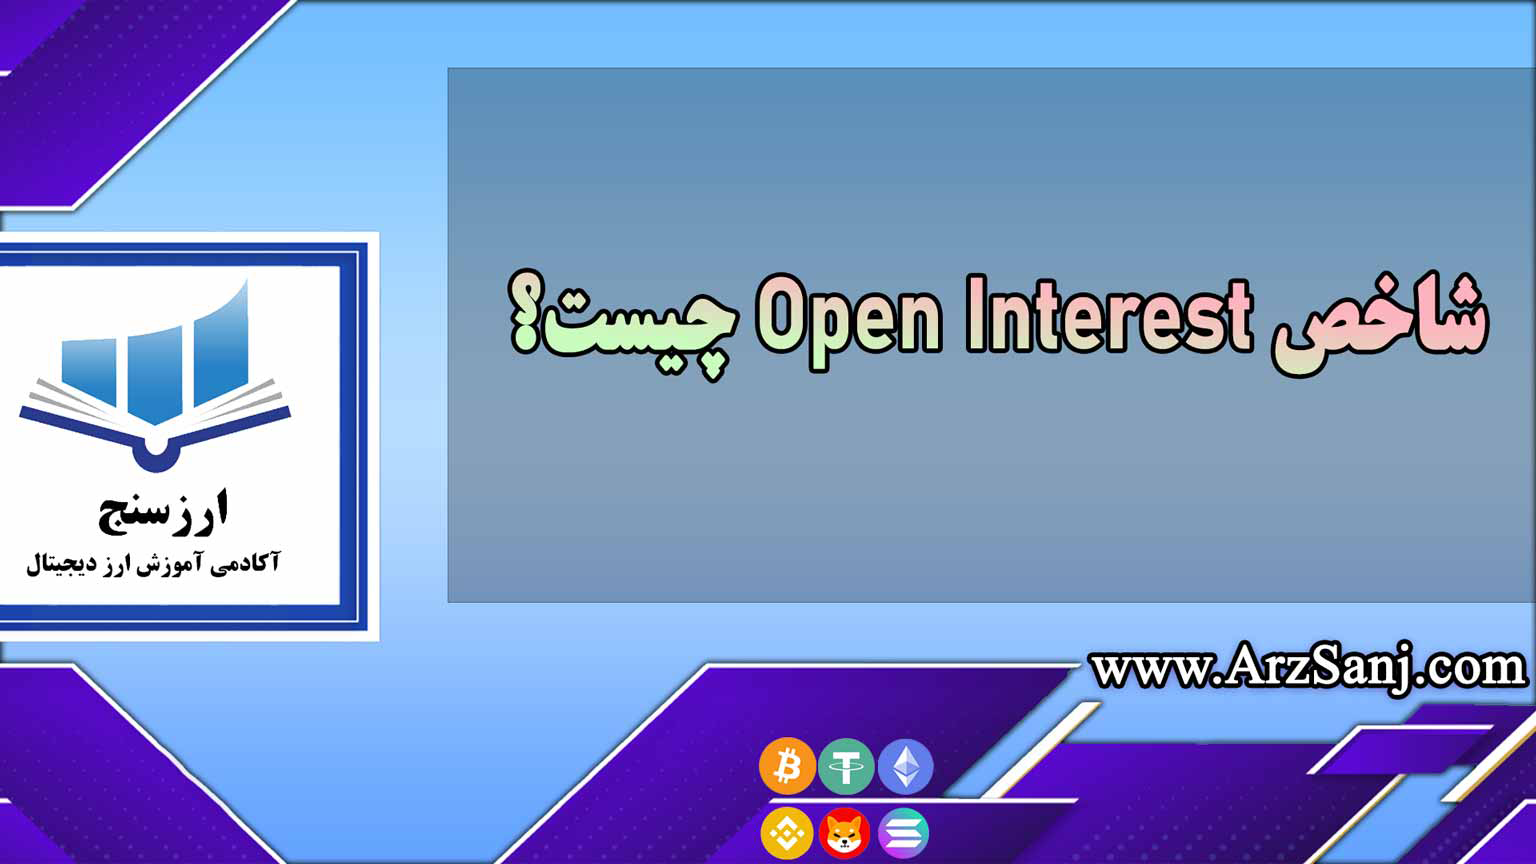 شاخص Open Interest چیست؟